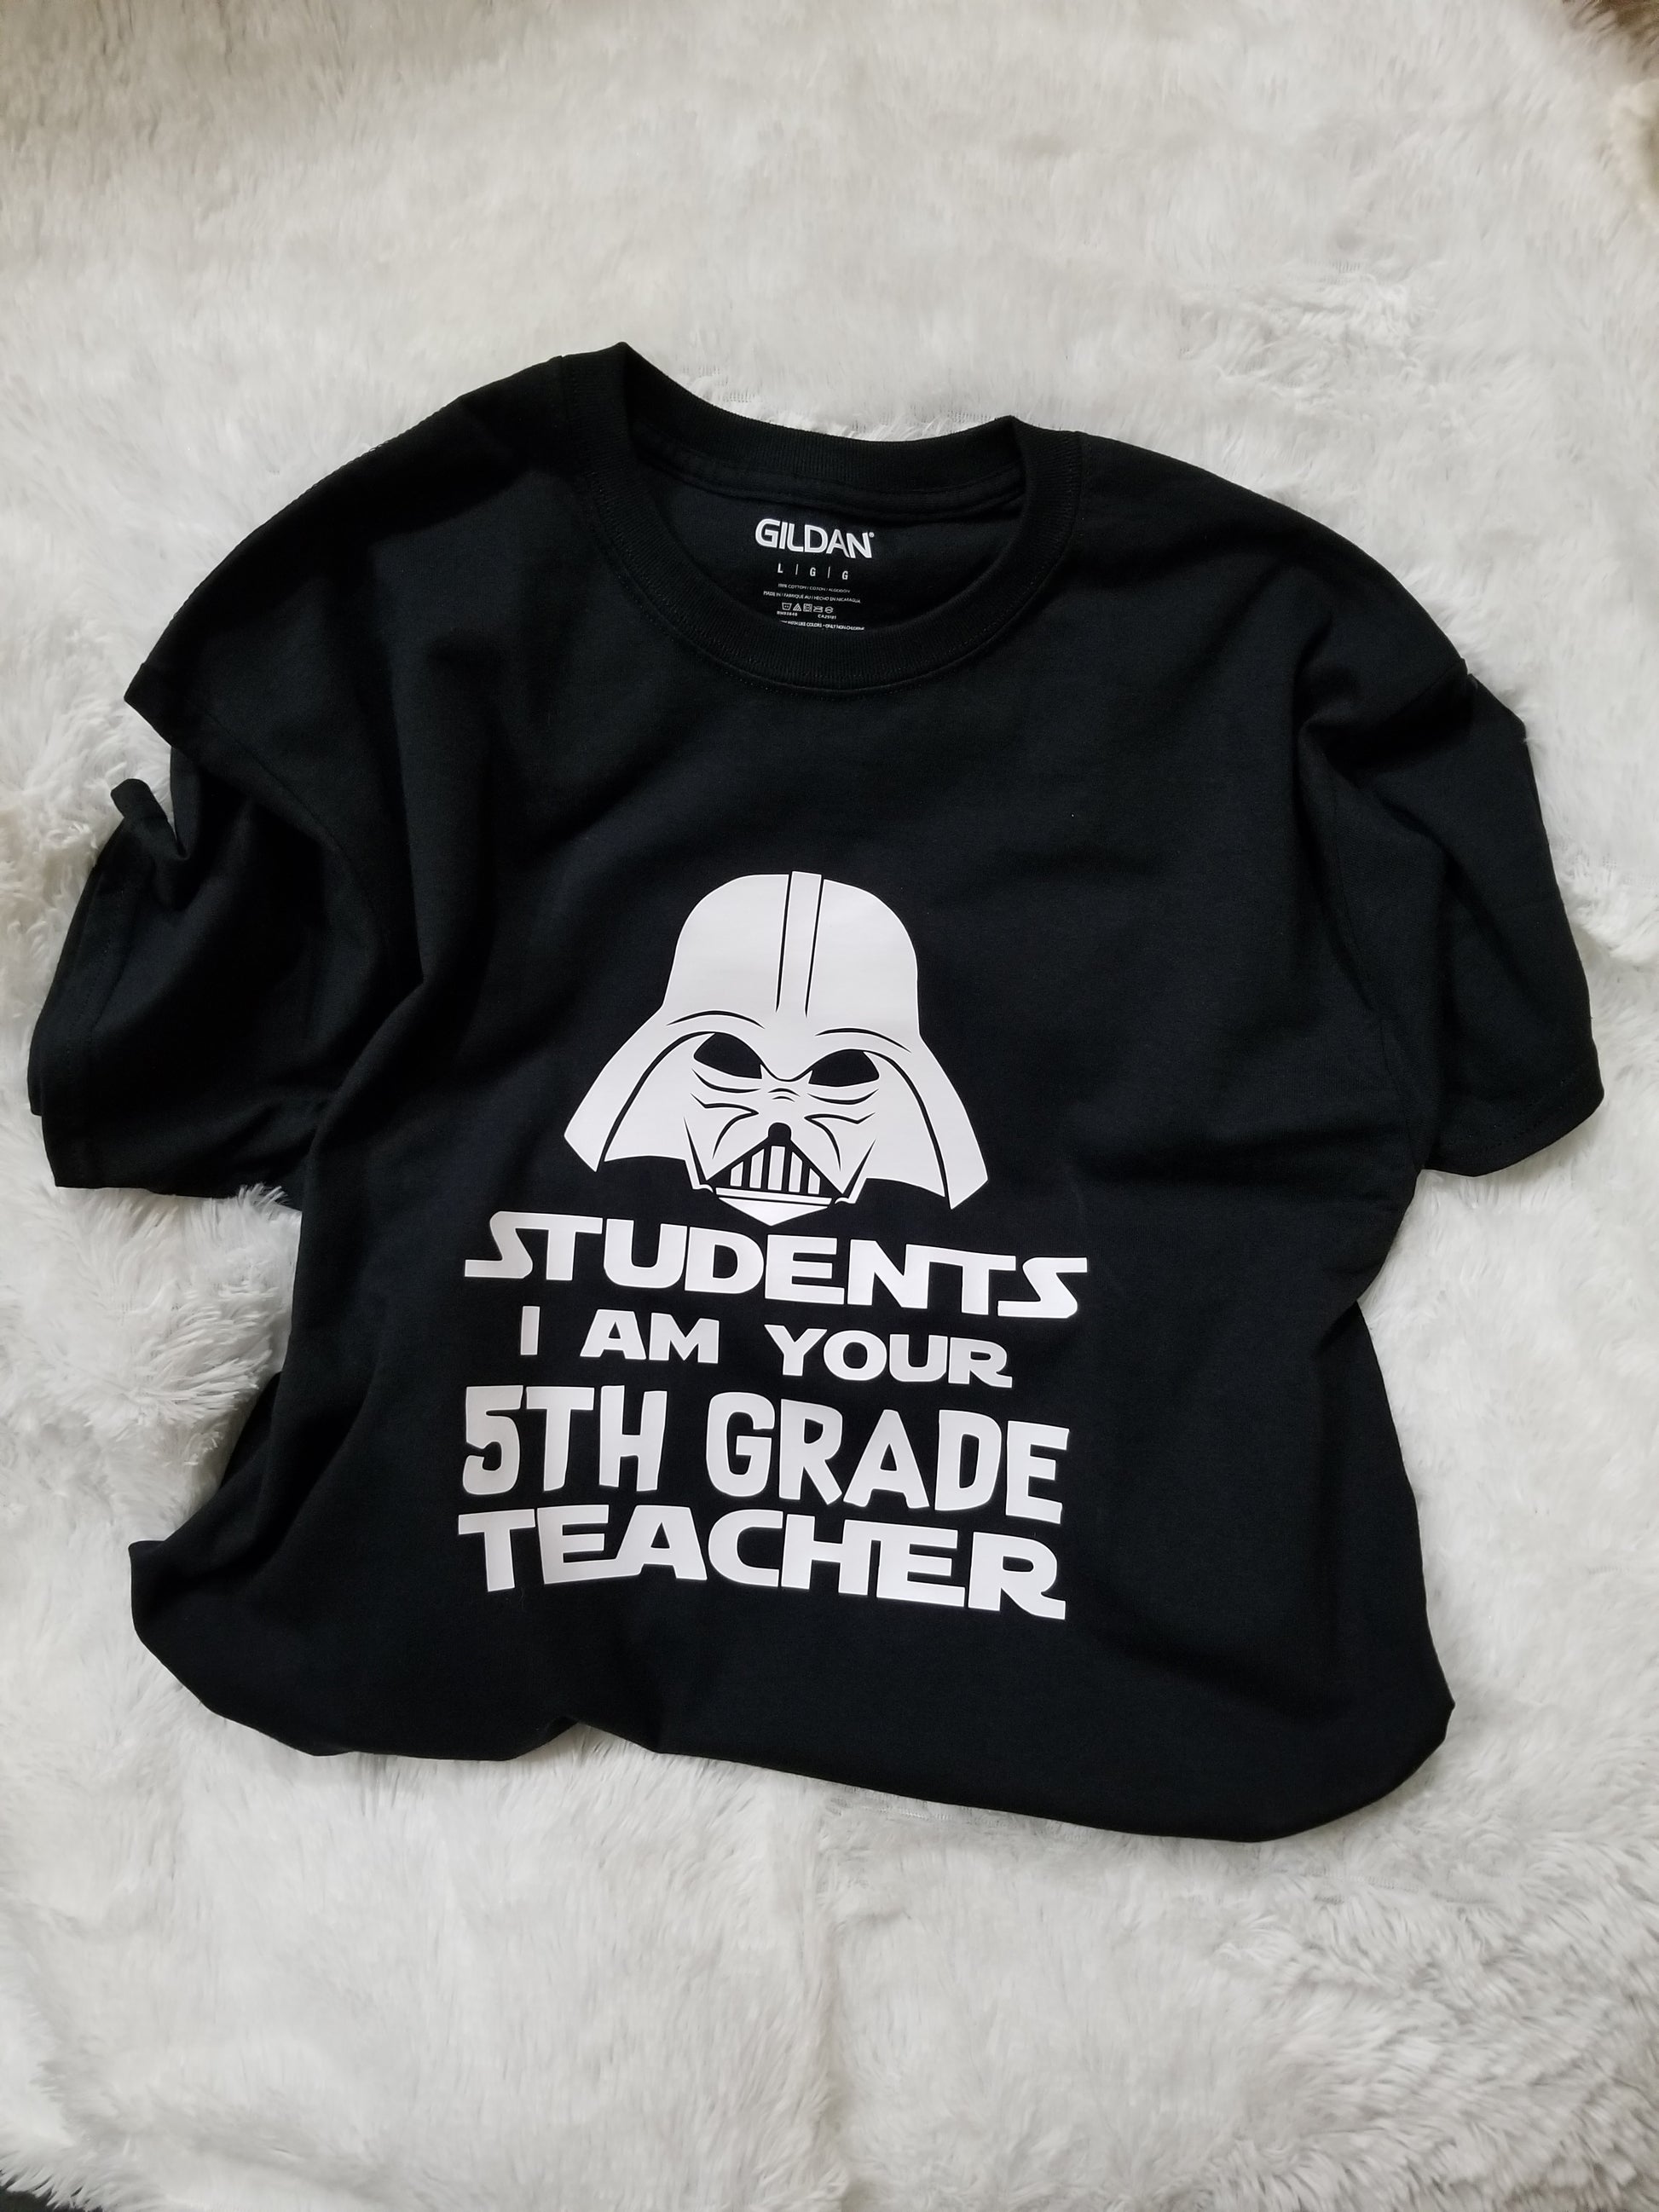 Teacher matching shirts